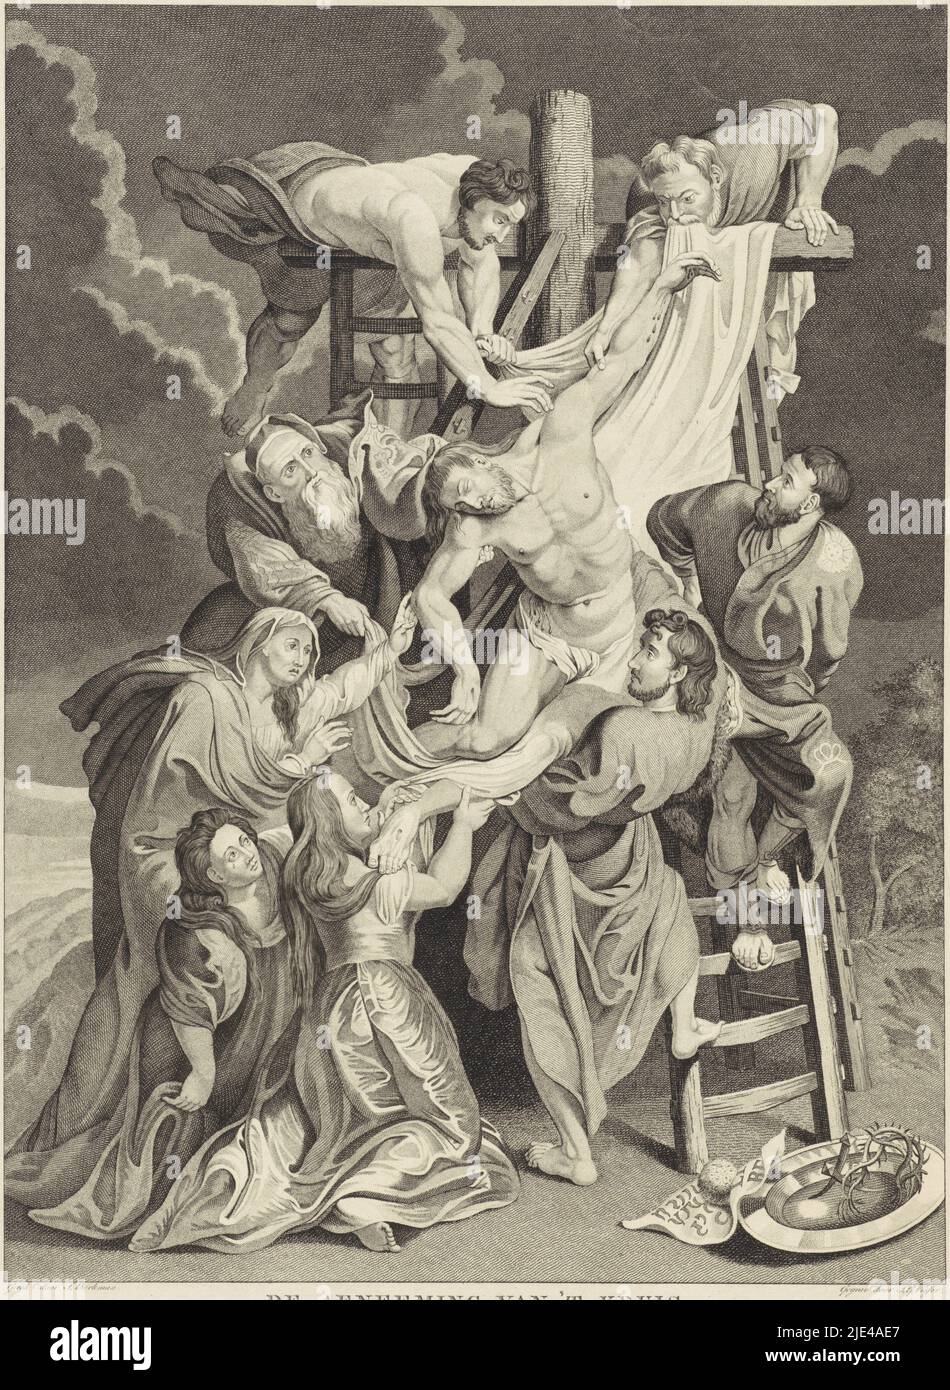 Descente de la Croix, Jan Gerritsz. Visser, d'après J. Berkman, d'après Peter Paul Rubens, 1812 - 1821, Descent de la Croix du Christ. Dans la couronne de premier plan des épines, des ongles, de l'éponge et du bassin. Joseph d'Arimathea a reçu la permission de retirer le corps de la croix. HJe est assisté par l'apôtre Jean, Nicodème et deux serviteurs. Sur la gauche se trouve Mary. Le pied du Christ repose sur les épaules de Marie Magdalene., Imprimeur: Jan Gerritsz. Visser, (mentionné sur l'objet), rapporteur pour avis intermédiaire: J. Berkman, (mentionné sur l'objet), après: Peter Paul Rubens, Amsterdam, 1812 - 1821, document Banque D'Images